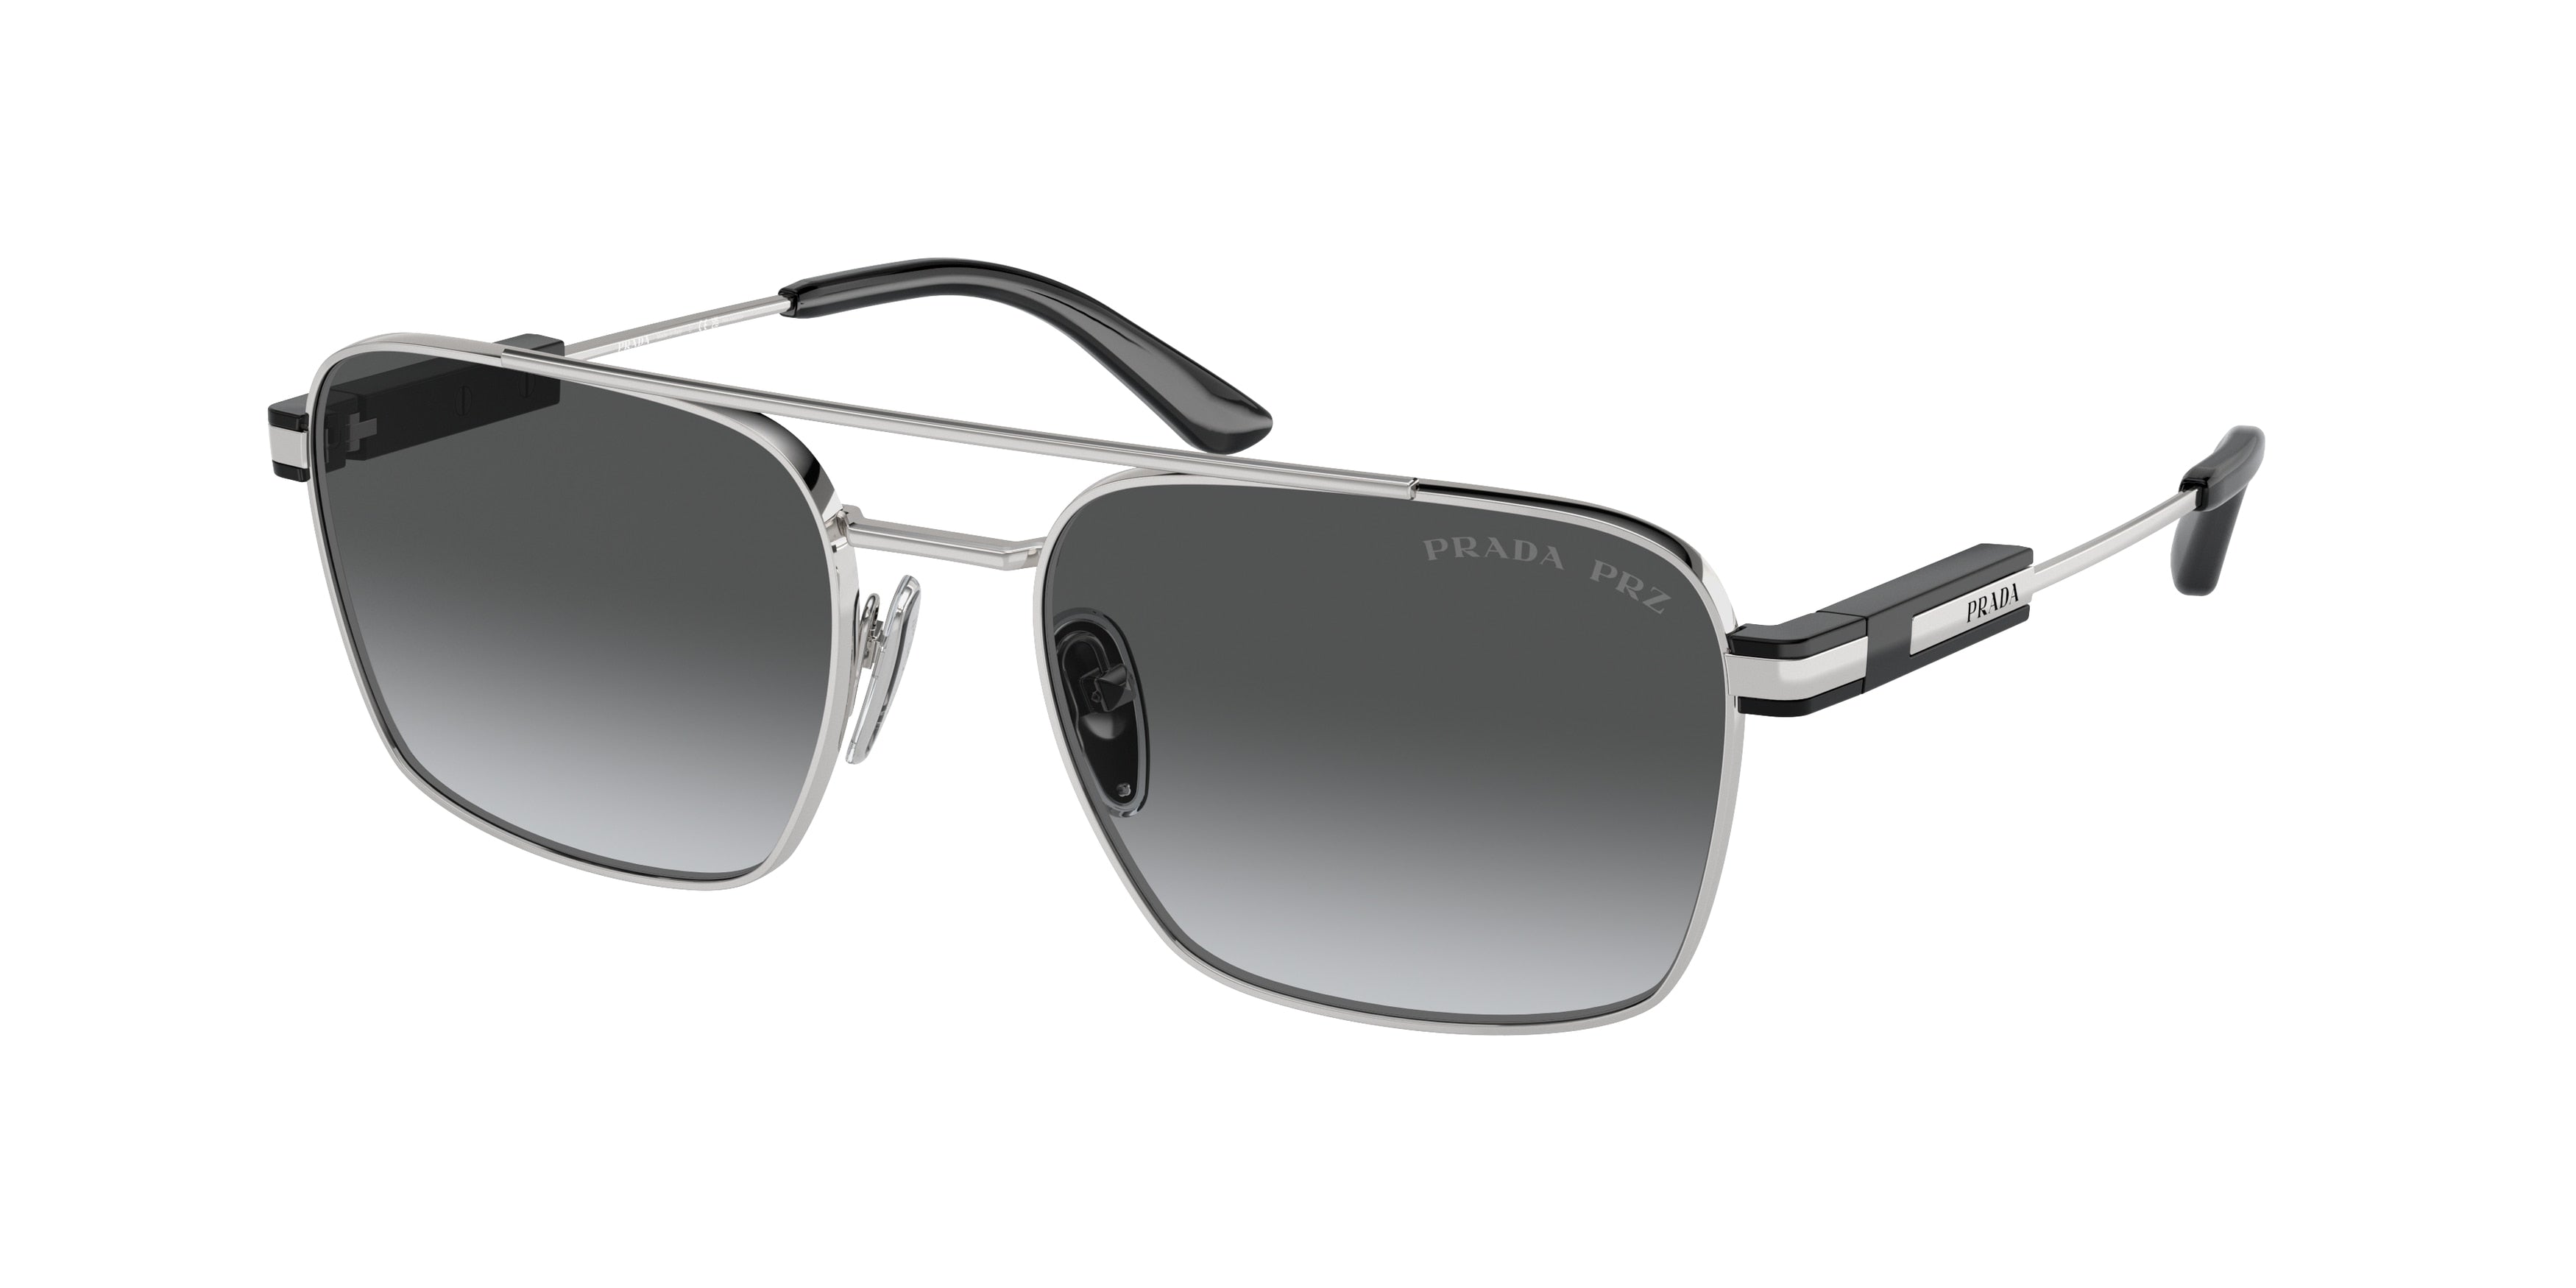 Prada PR67ZS Pillow Sunglasses  1BC5W1-Silver 56-145-18 - Color Map Silver